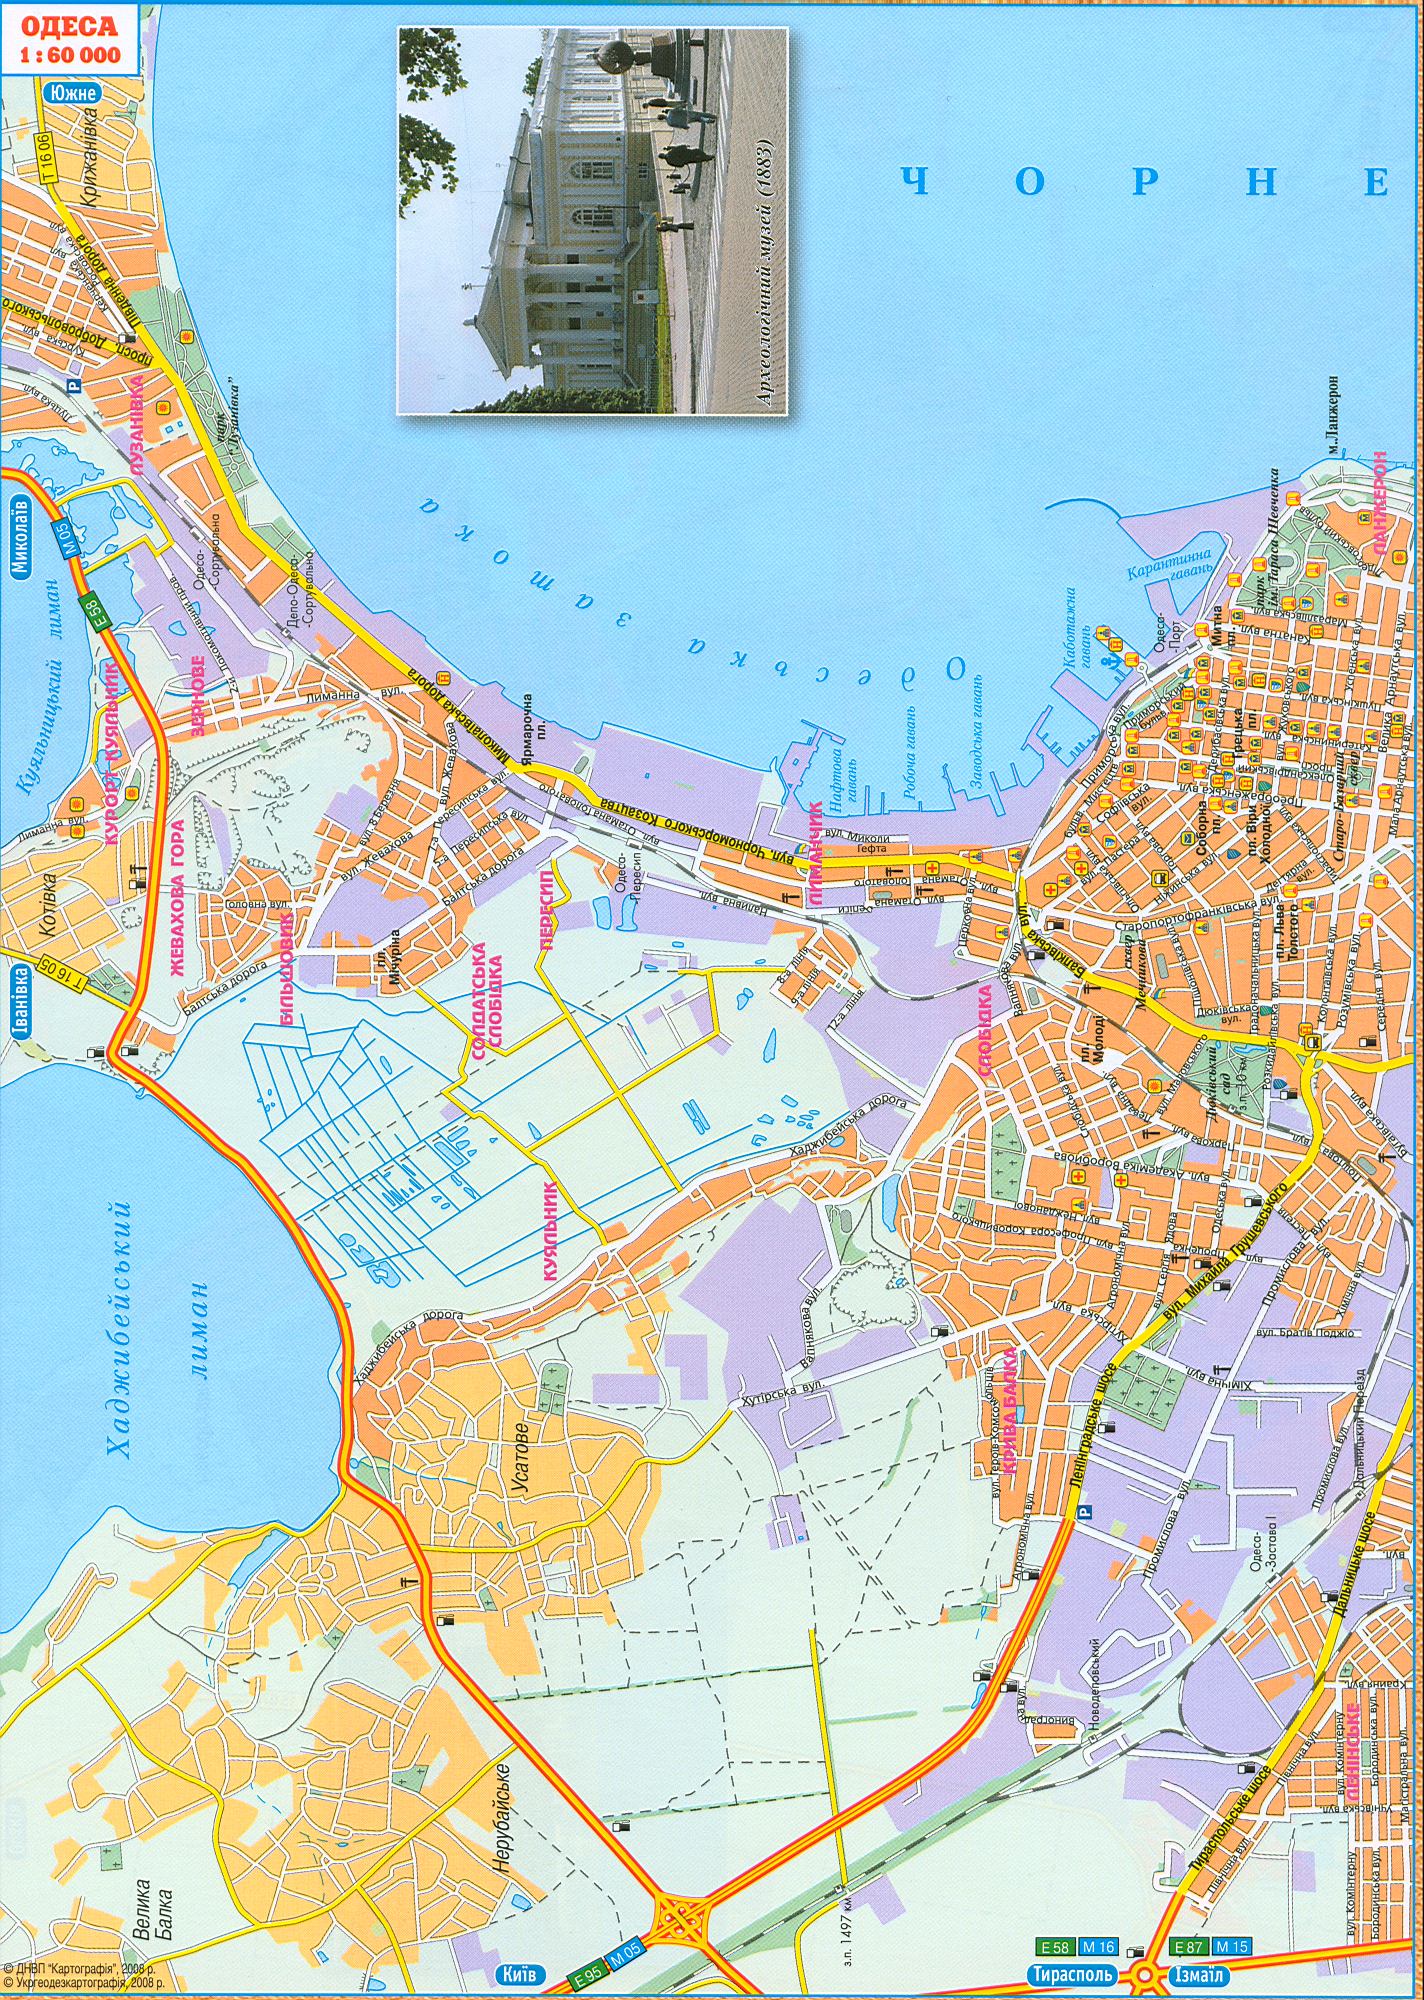 Odessa Plan mis à jour en 2008, les principales artères de la ville d'Odessa, l'échelle de 1cm: 600m. télécharger